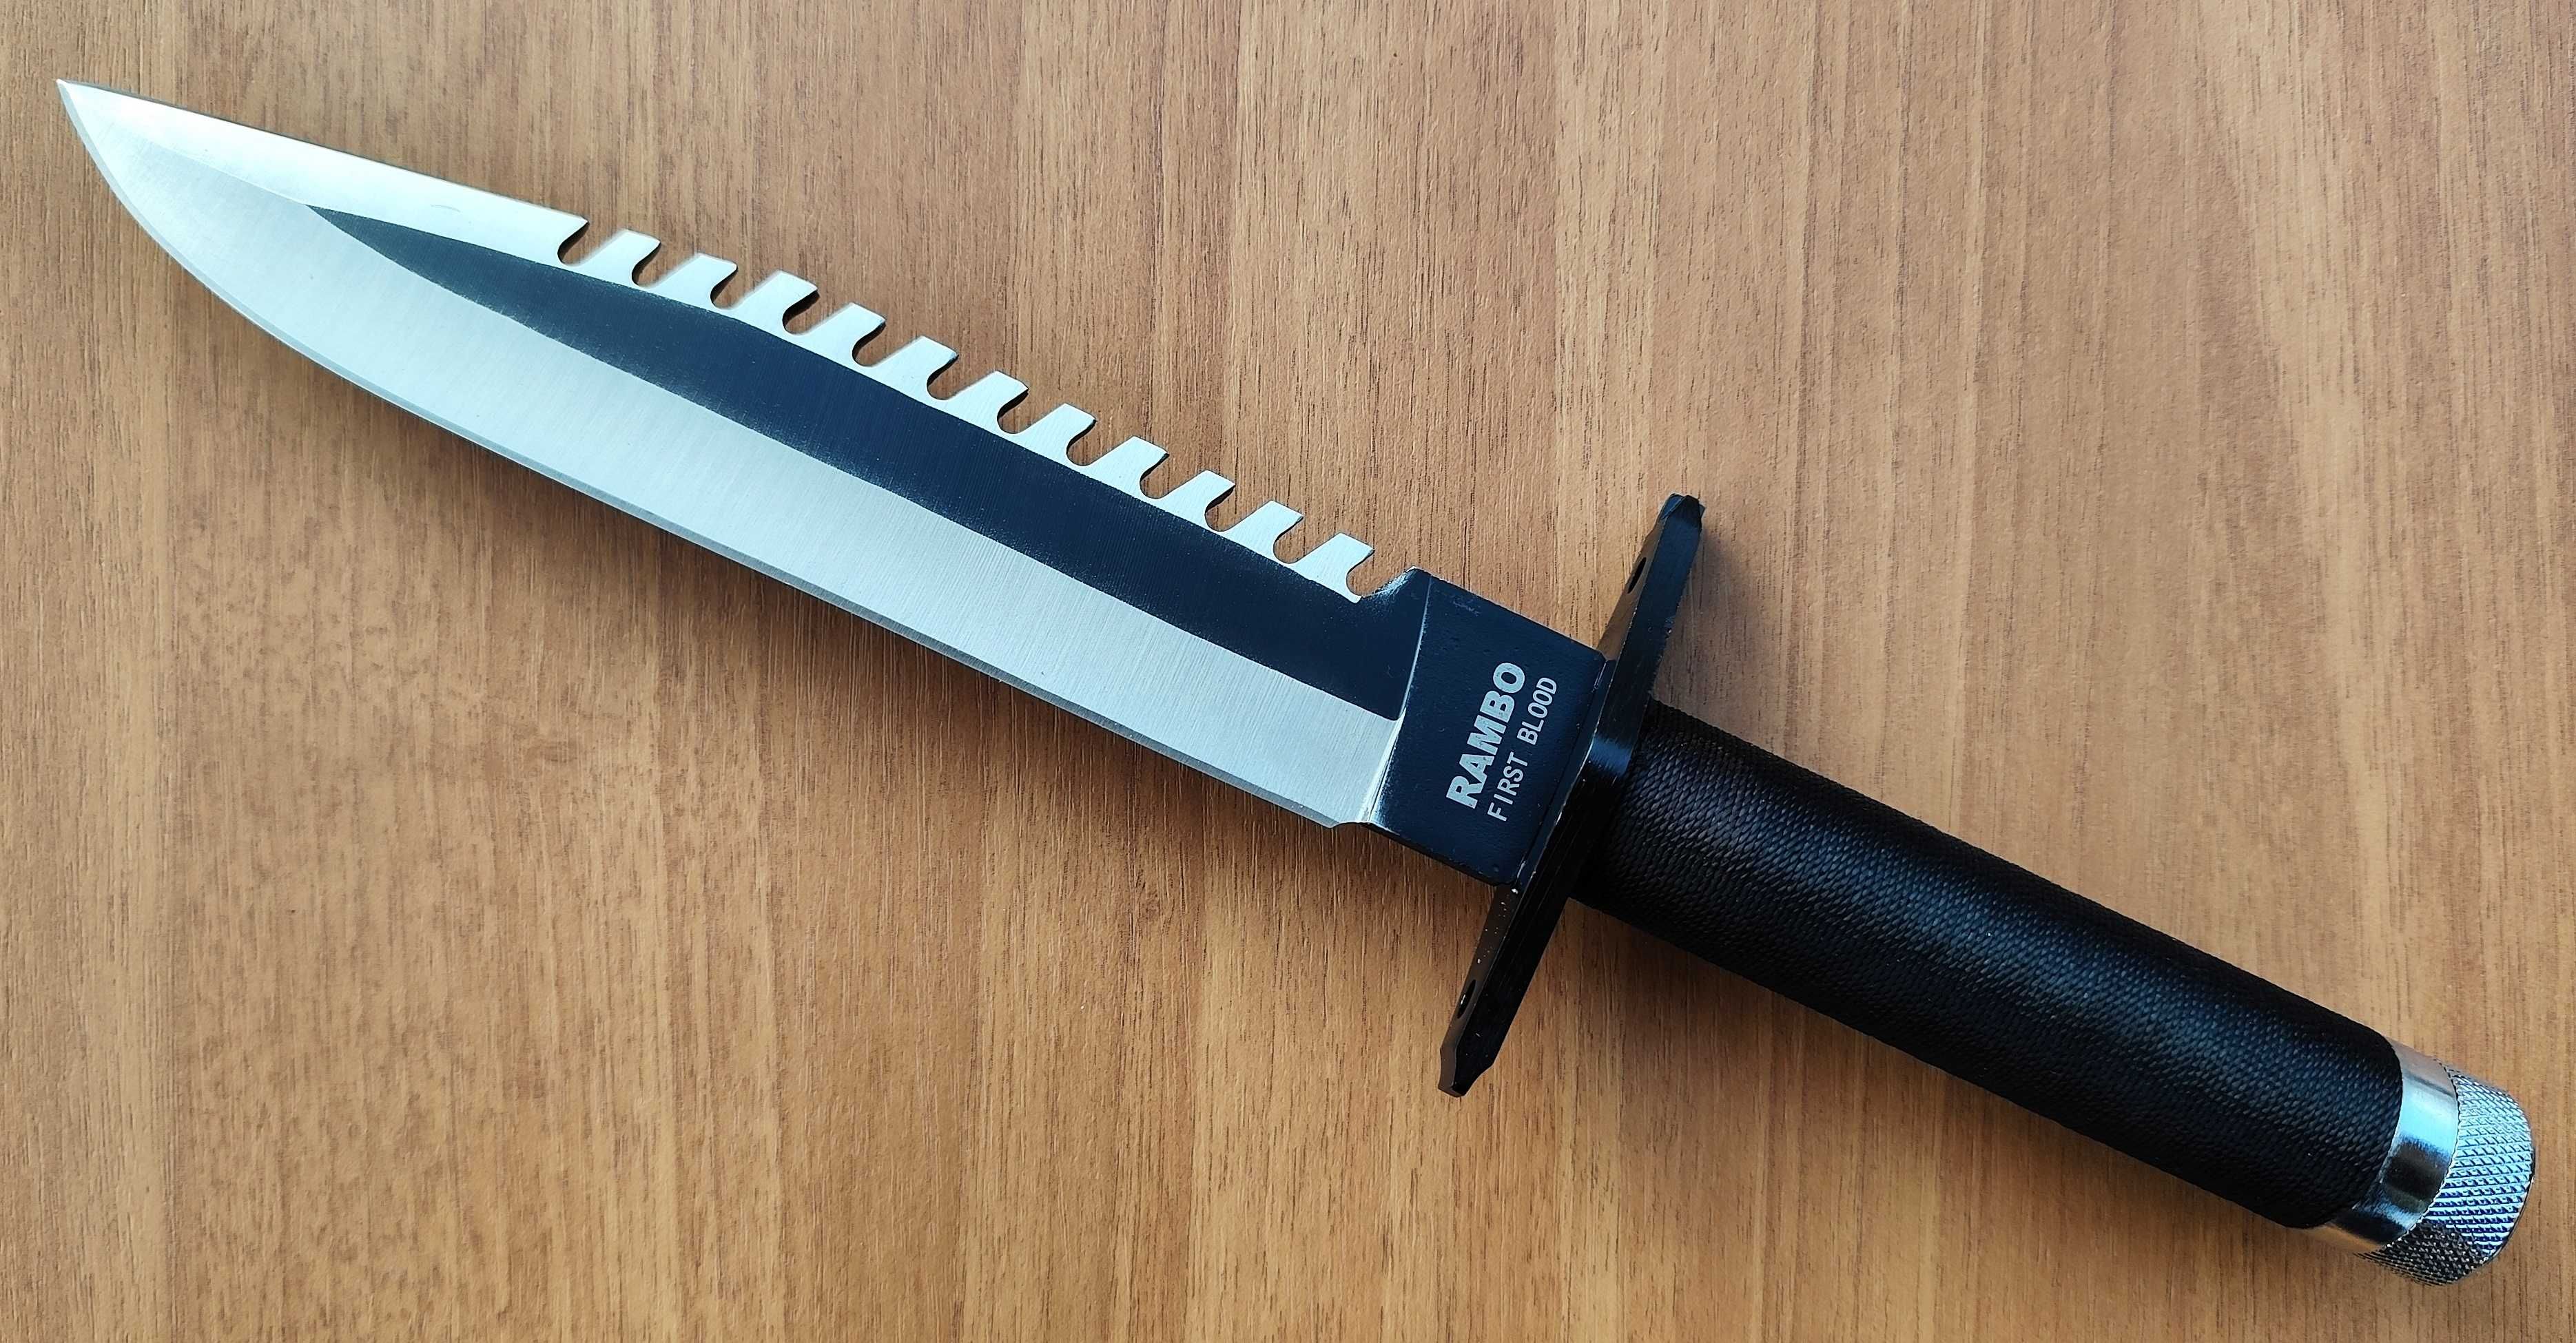 Нож за оцеляване - RAMBO FIRST BLOOD